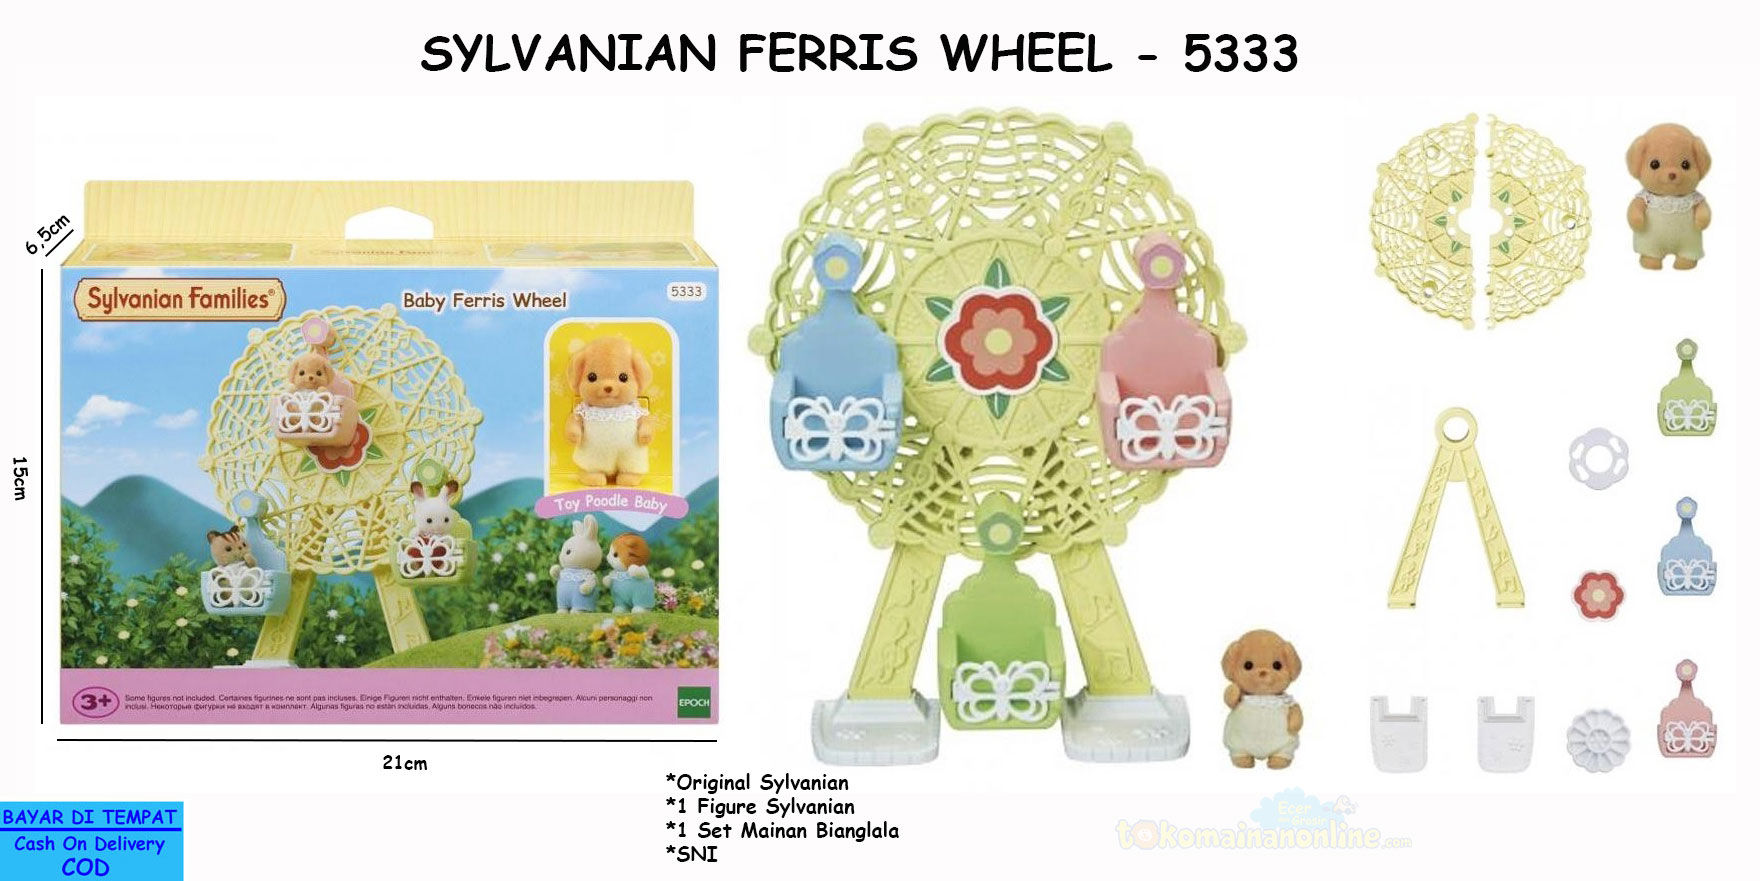 toko mainan online SYLVANIAN FERRIS WHEEL - 5333